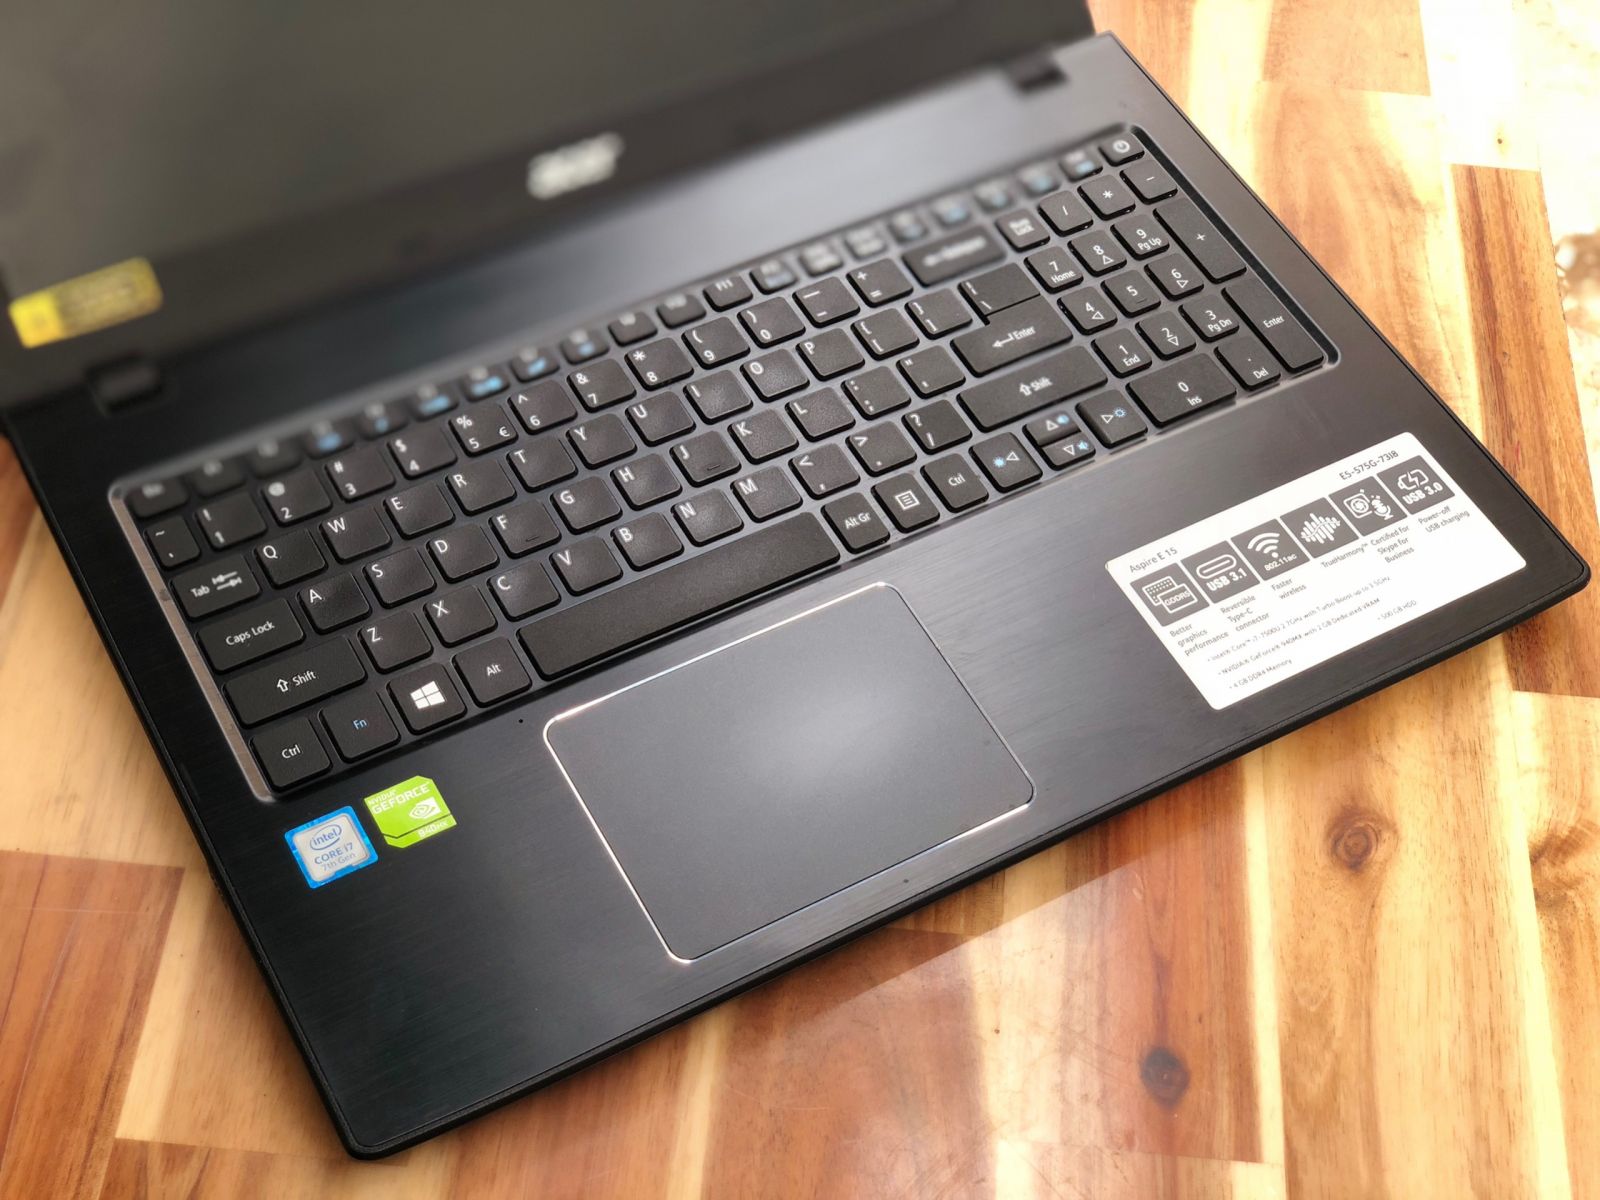 Laptop Acer E5-576G/ i7 7500U/ 8G/ SSD128+500G/ Vga GT940MX/ Full HD/ Chuyên Game Đồ Họa/ Giá rẻ1